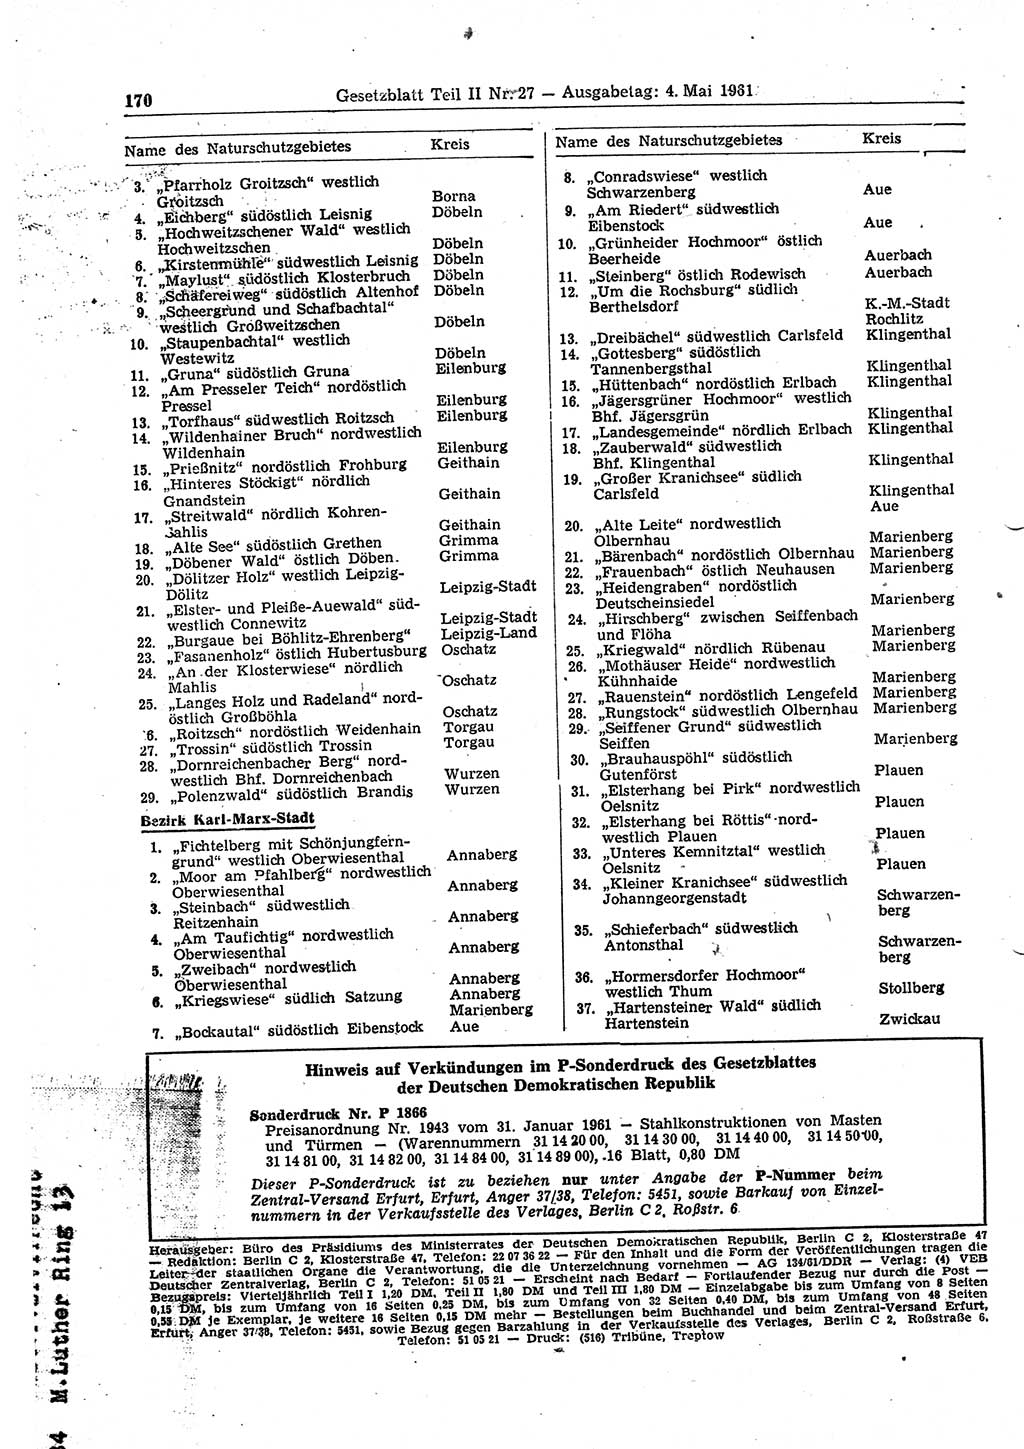 Gesetzblatt (GBl.) der Deutschen Demokratischen Republik (DDR) Teil ⅠⅠ 1961, Seite 170 (GBl. DDR ⅠⅠ 1961, S. 170)